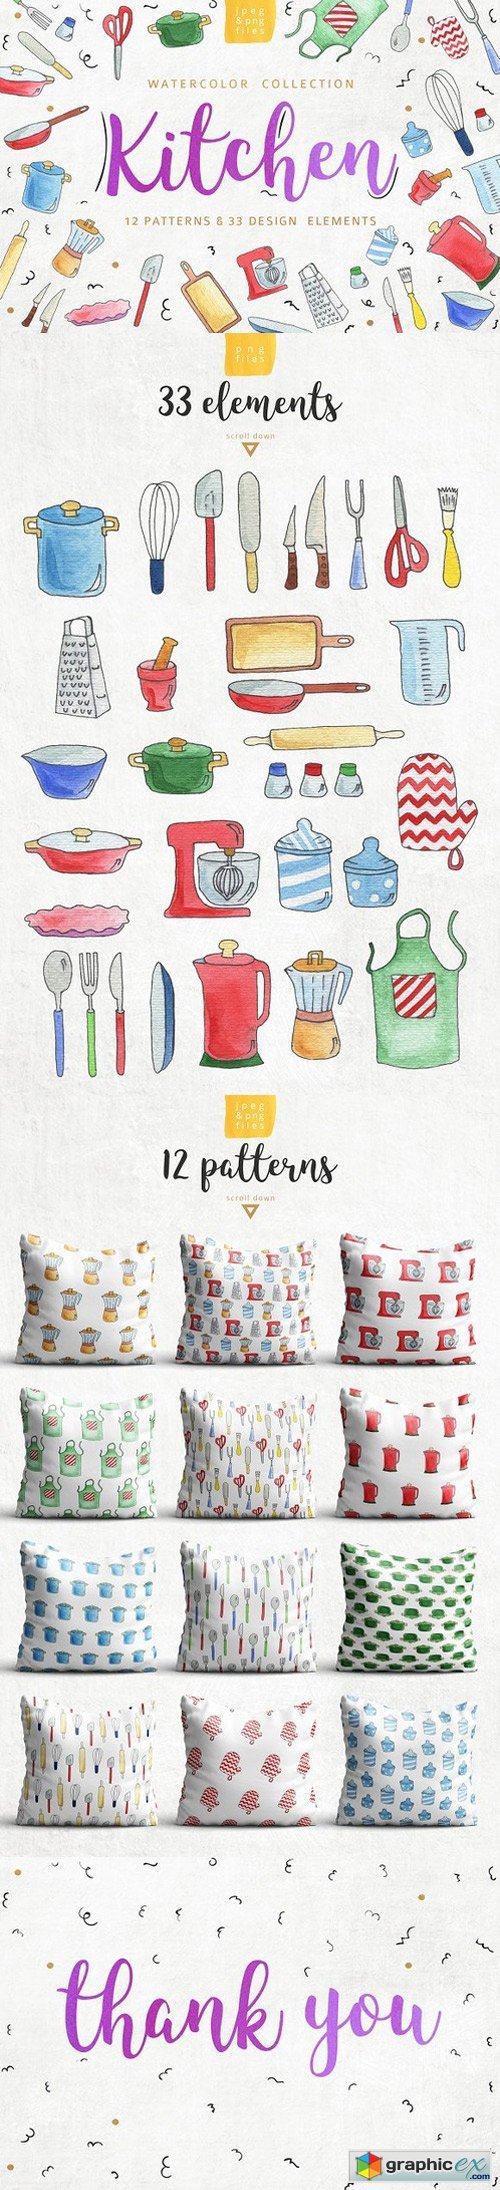 Kitchen patterns & elements